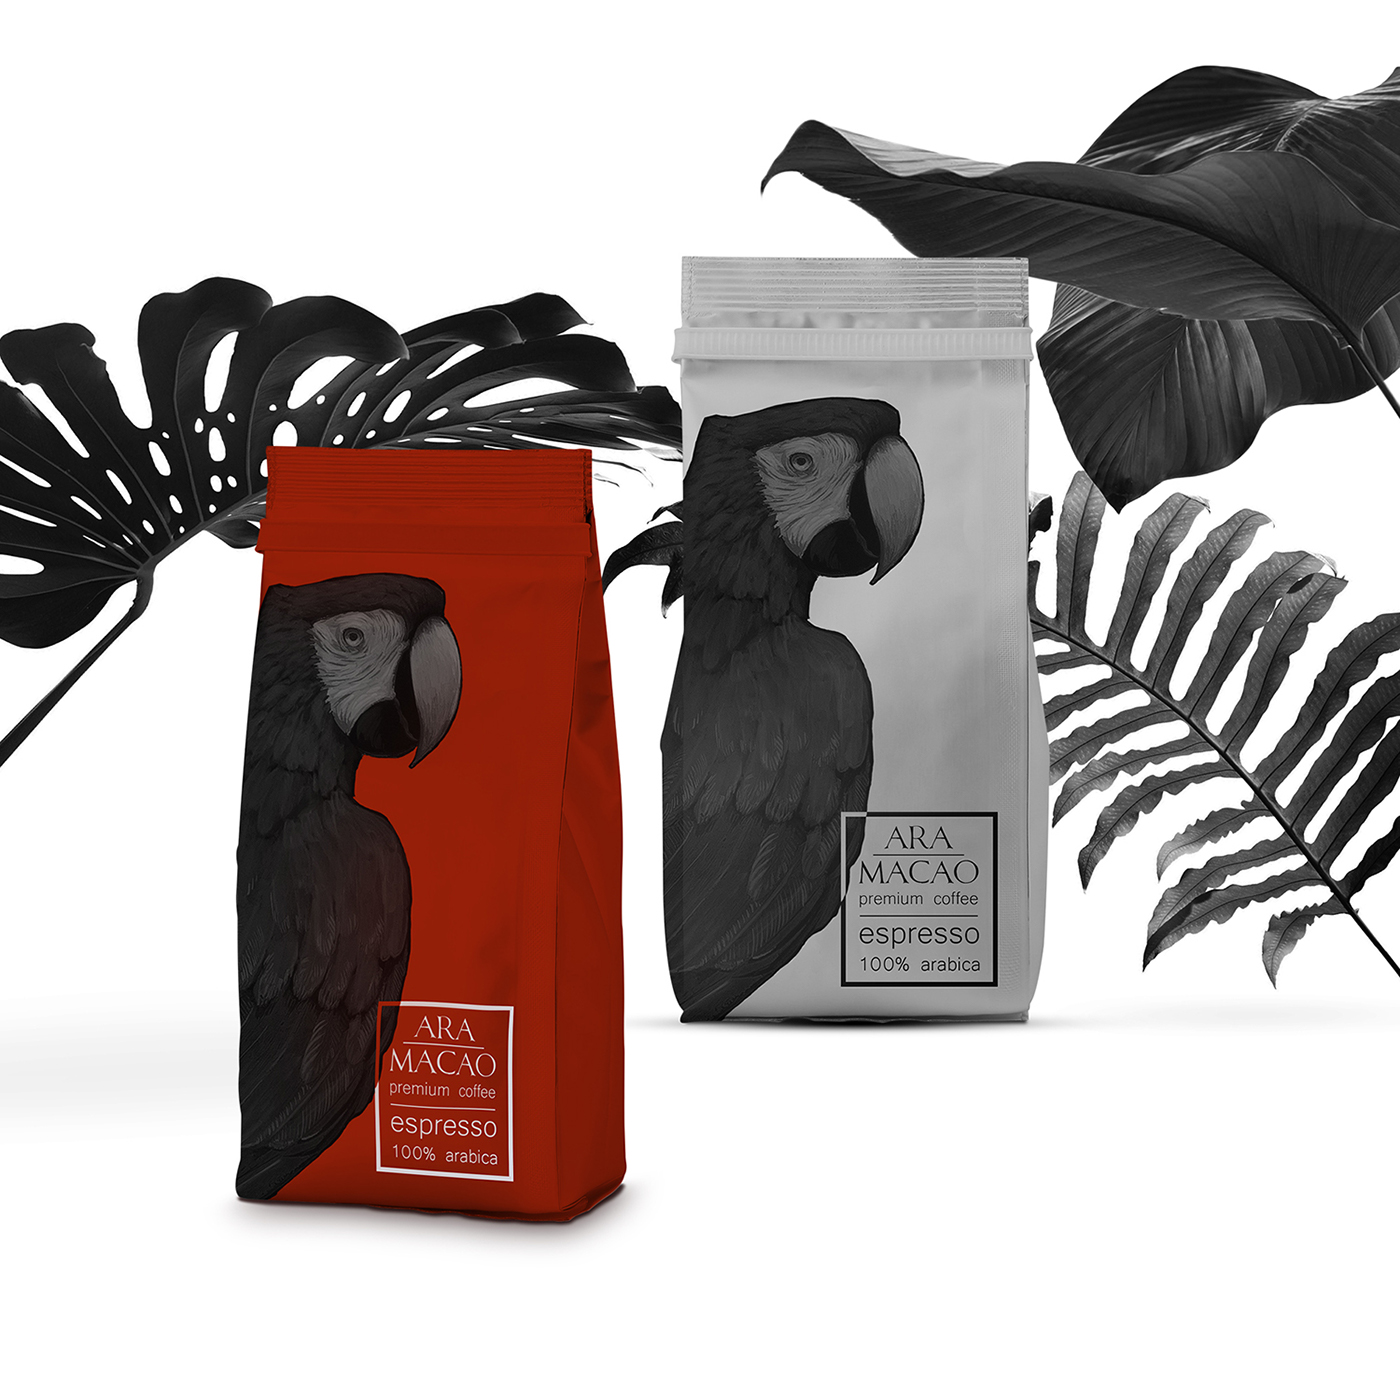 Coffee Packaging Design - Ara Macao coffee package design 03